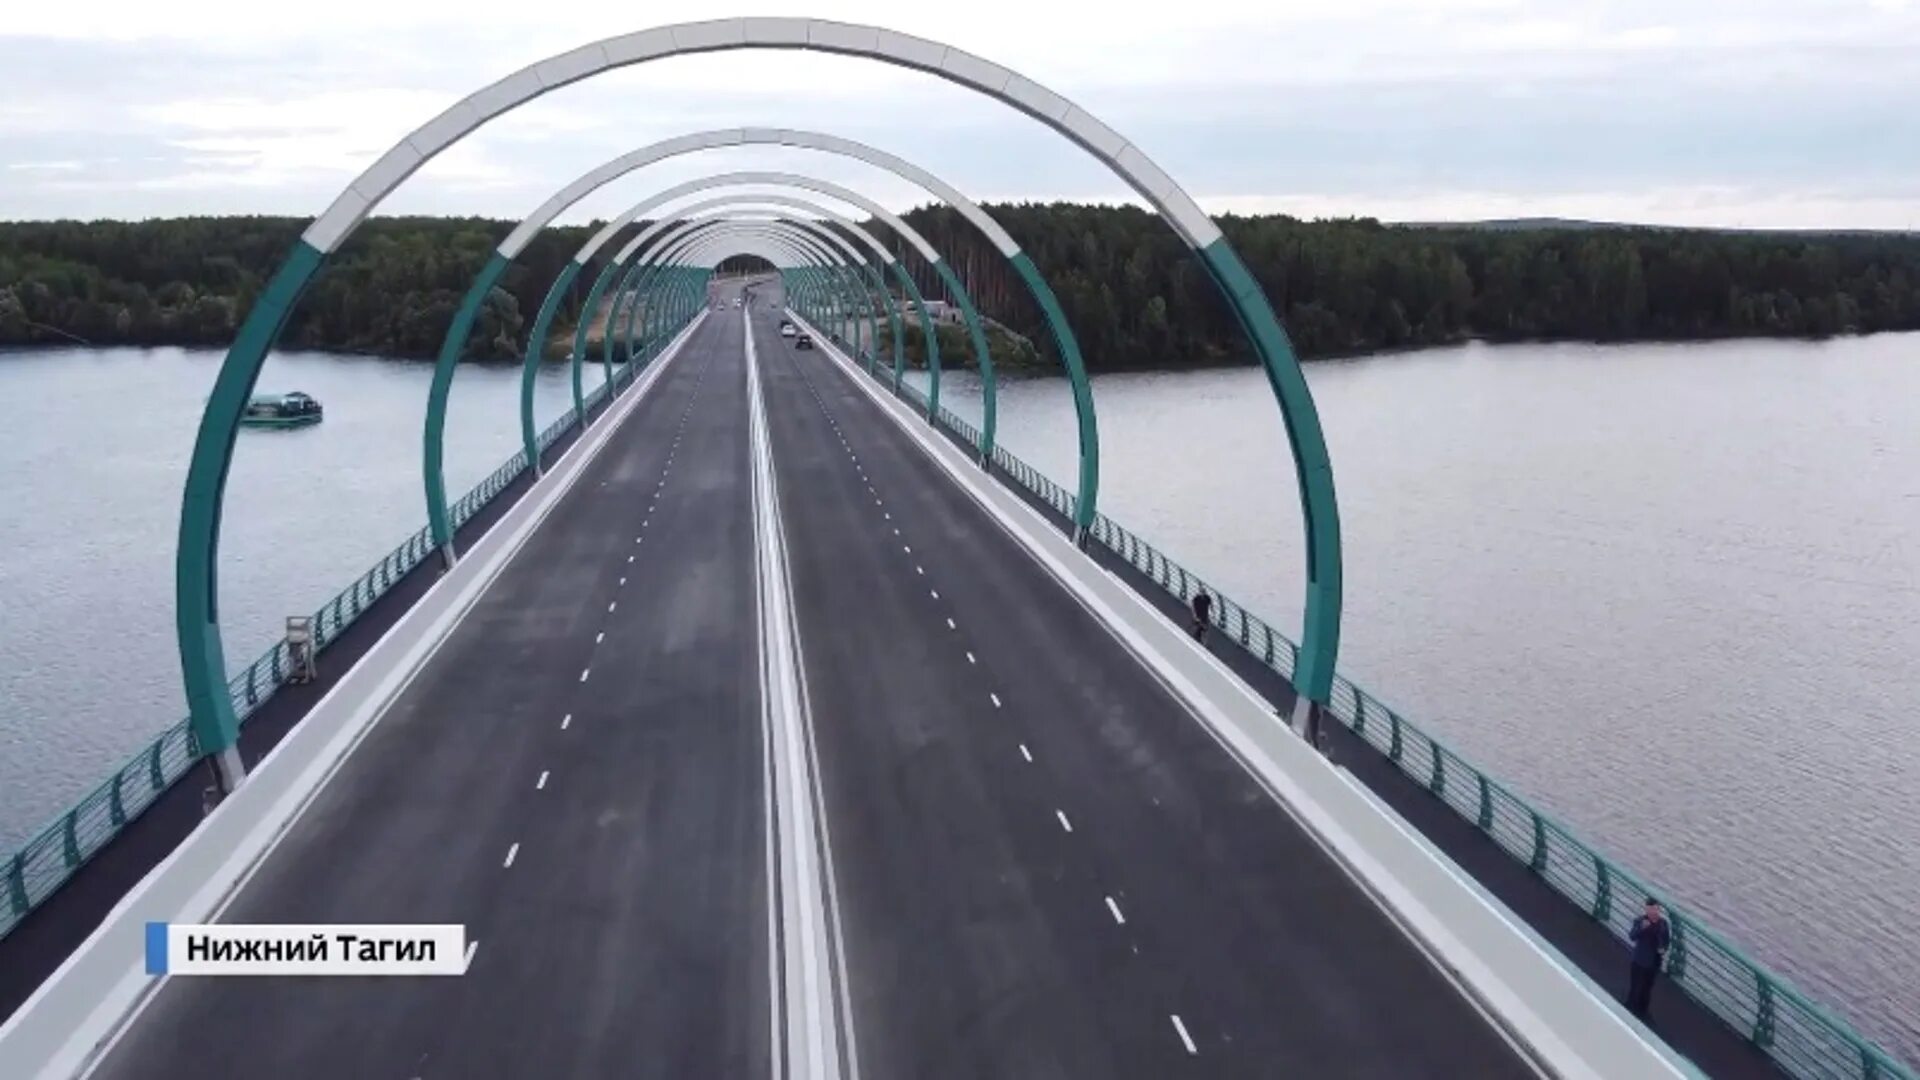 Открыли новый мост. Мост Нижний Тагил. Новый мост в Нижнем Тагиле. Мост в Нижнем Тагиле 2022. Луганский мост в Нижнем Тагиле.